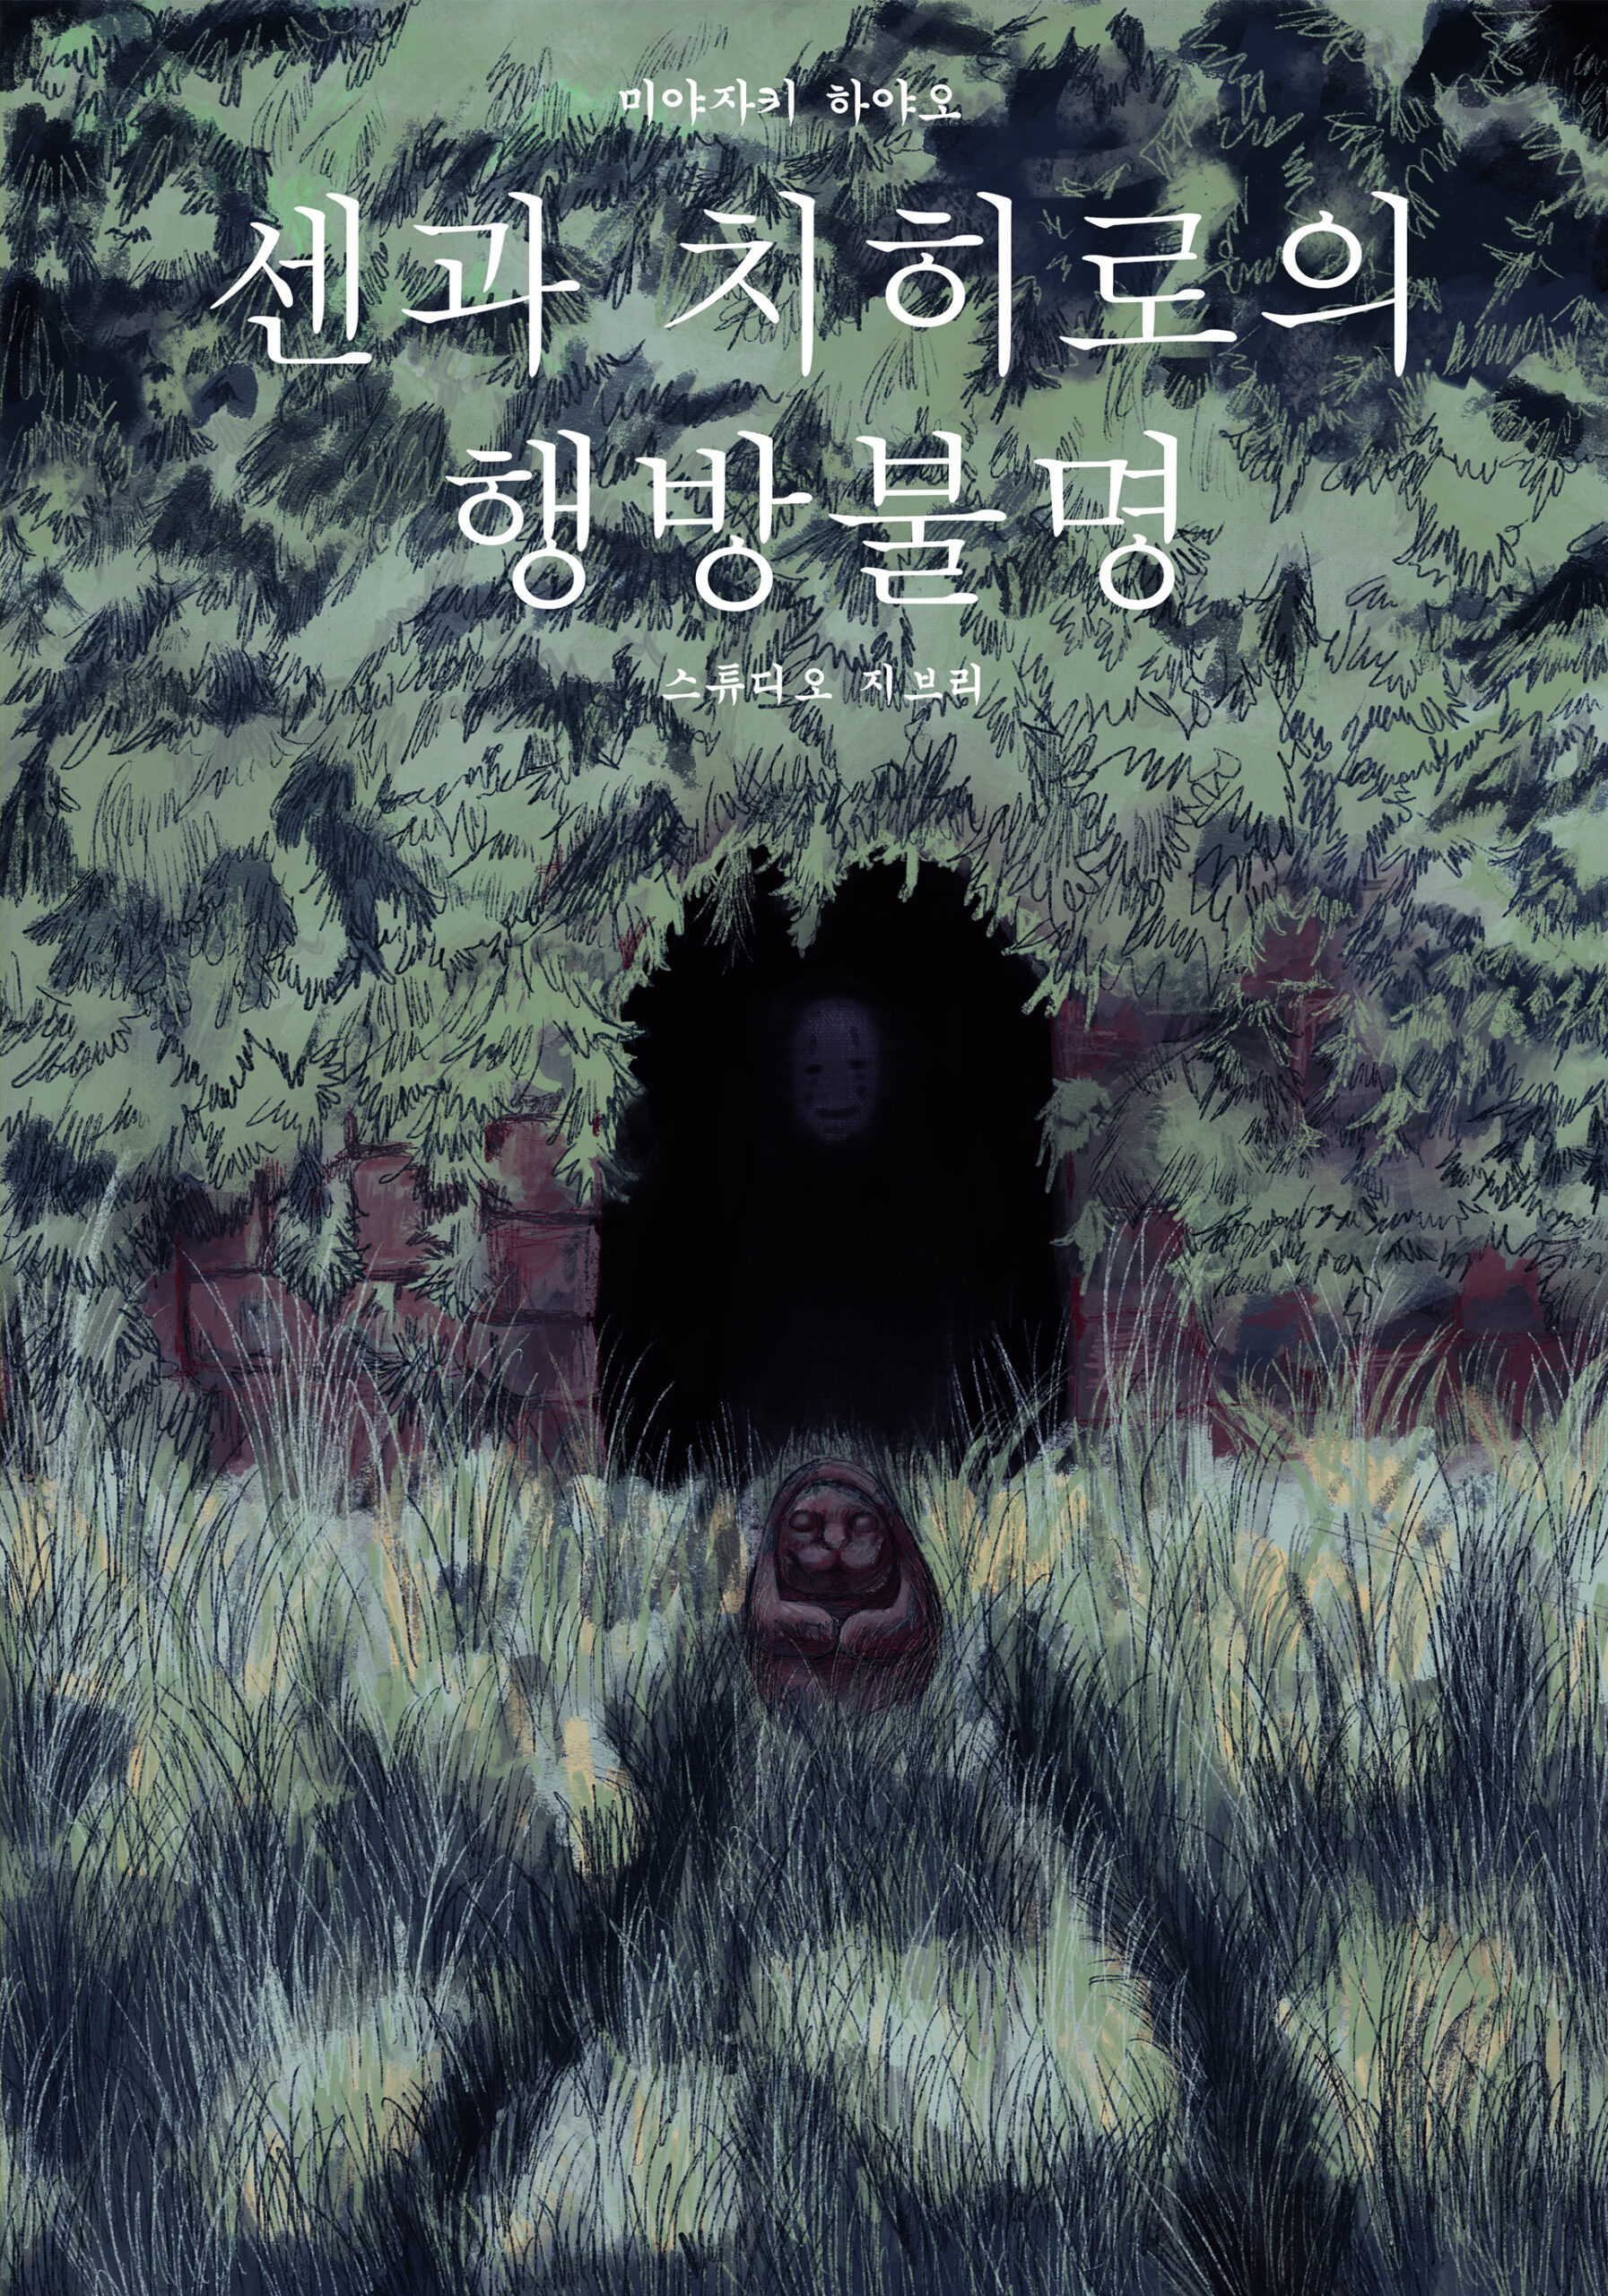 Plakat do filmu w odcieniach zieleni i brązów, zawierający typografię w języku koreańskim.